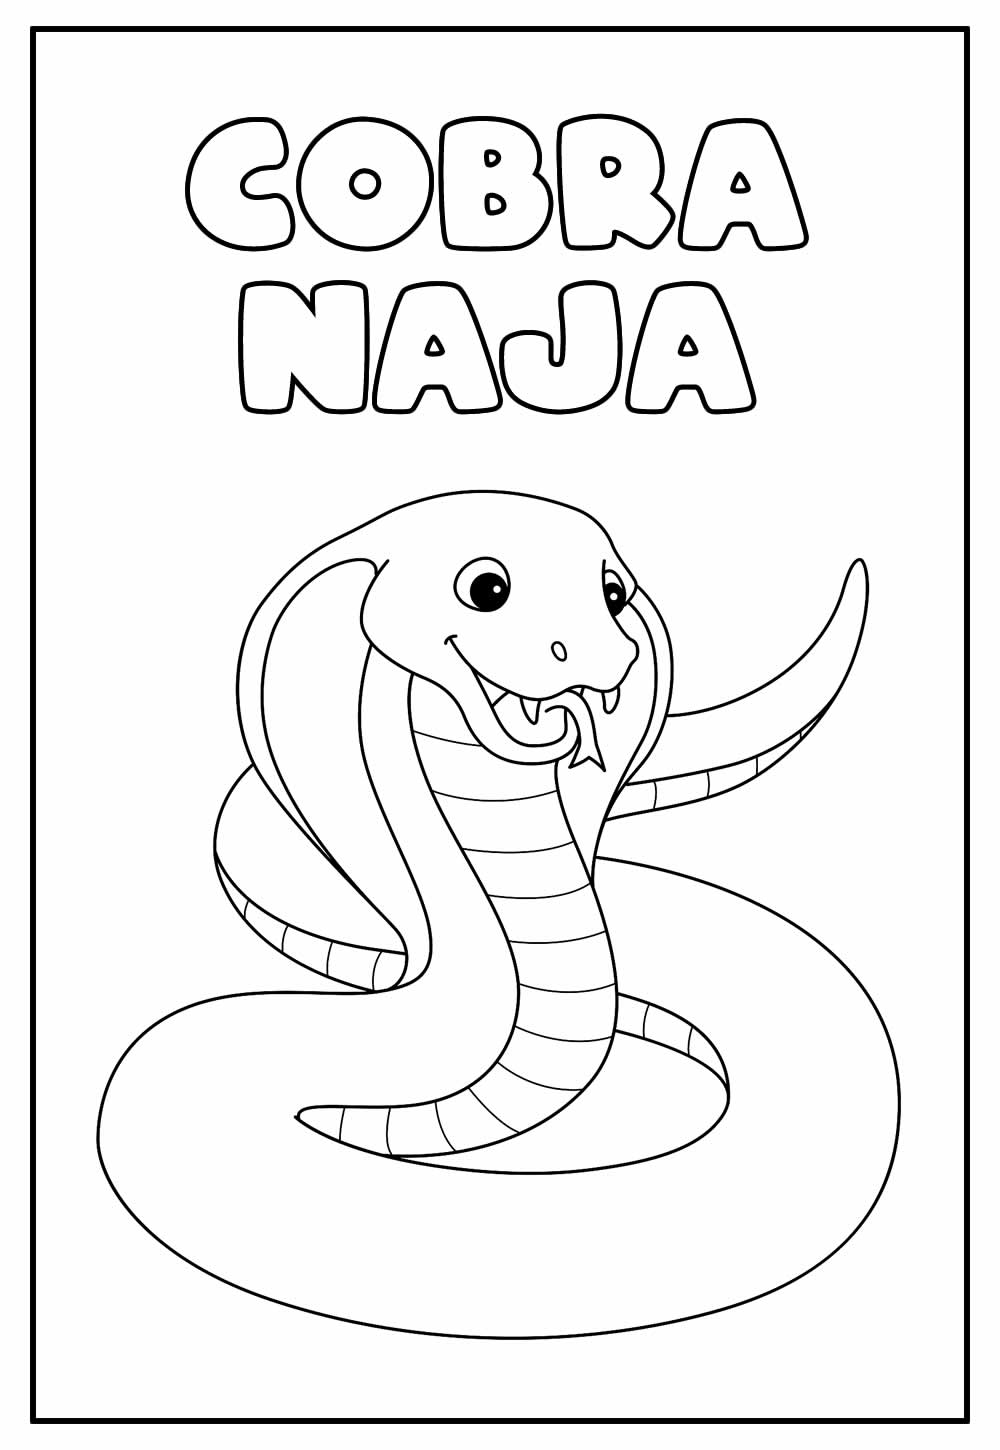 Desenho Educativo de Cobra Naja para colorir